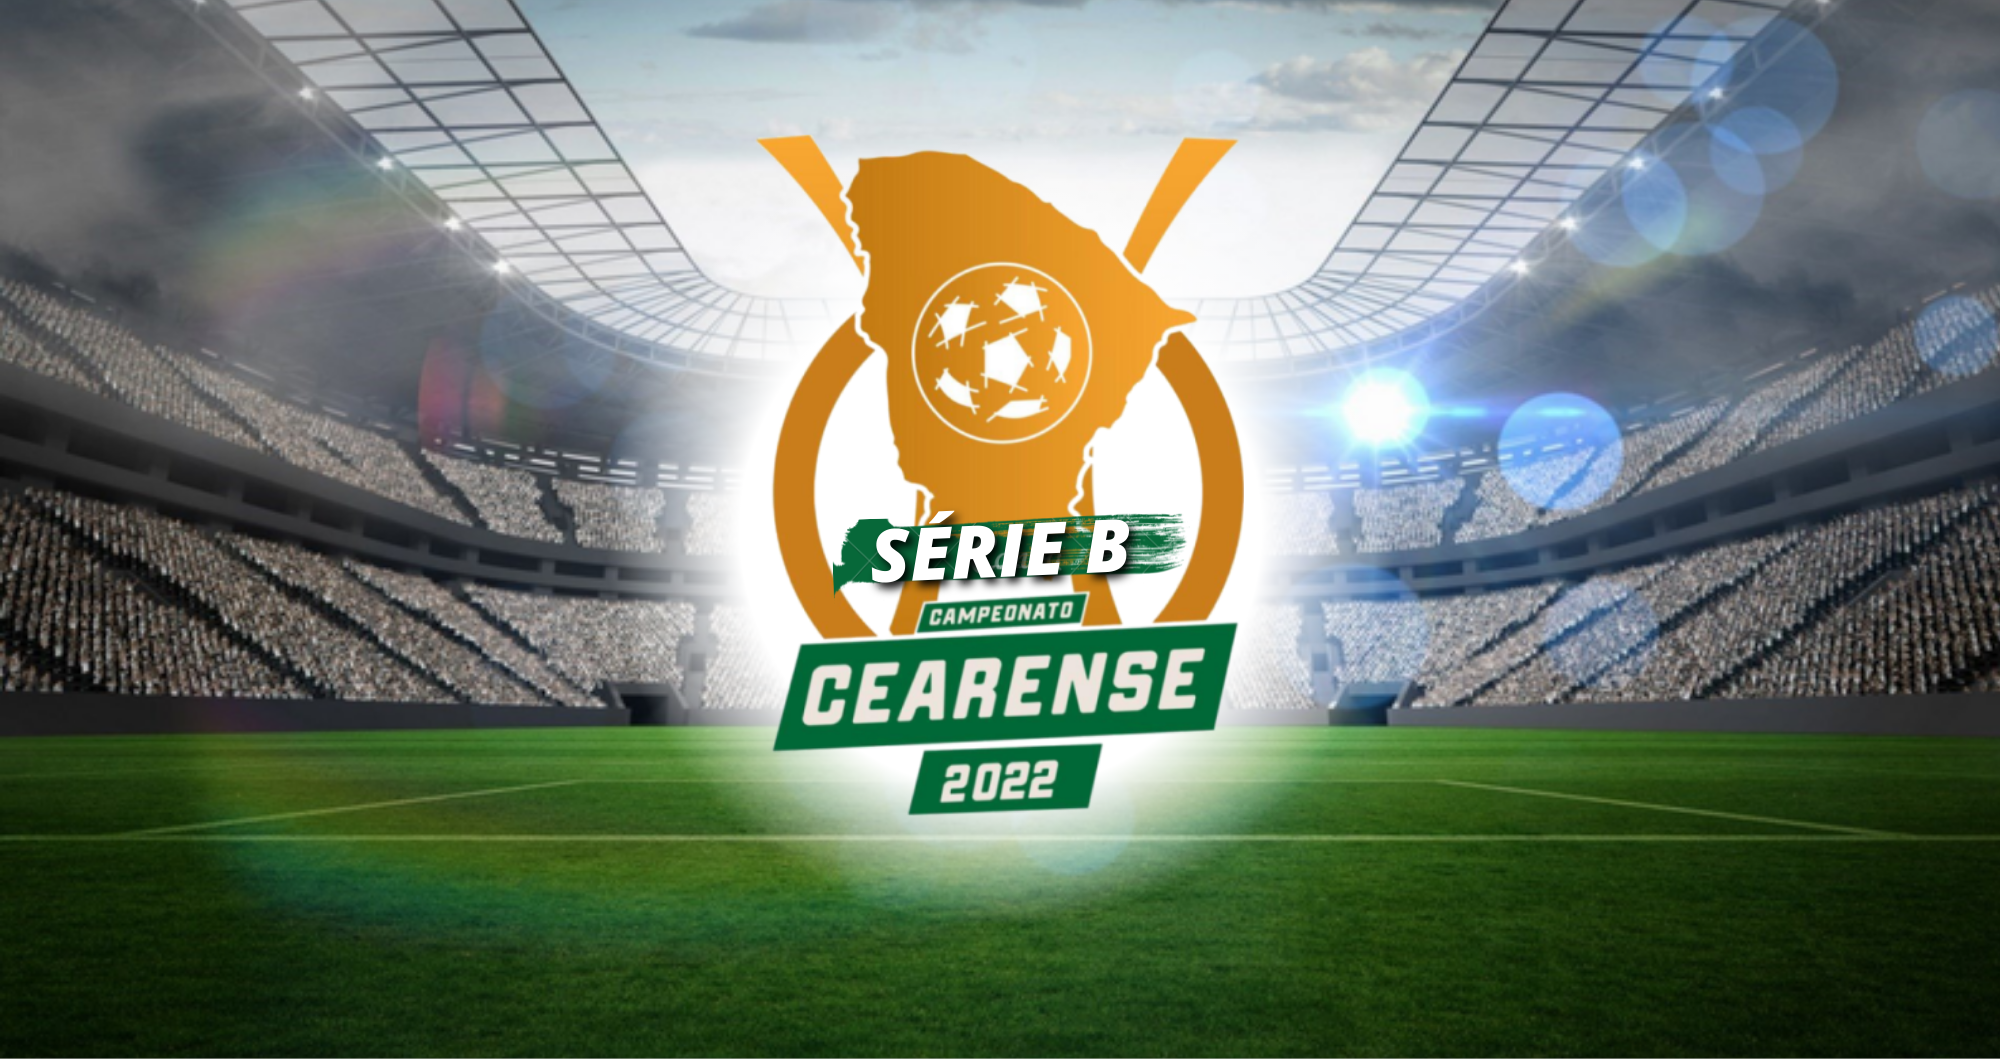 Série B do Cearense: veja tabela de 2022, cearense série b